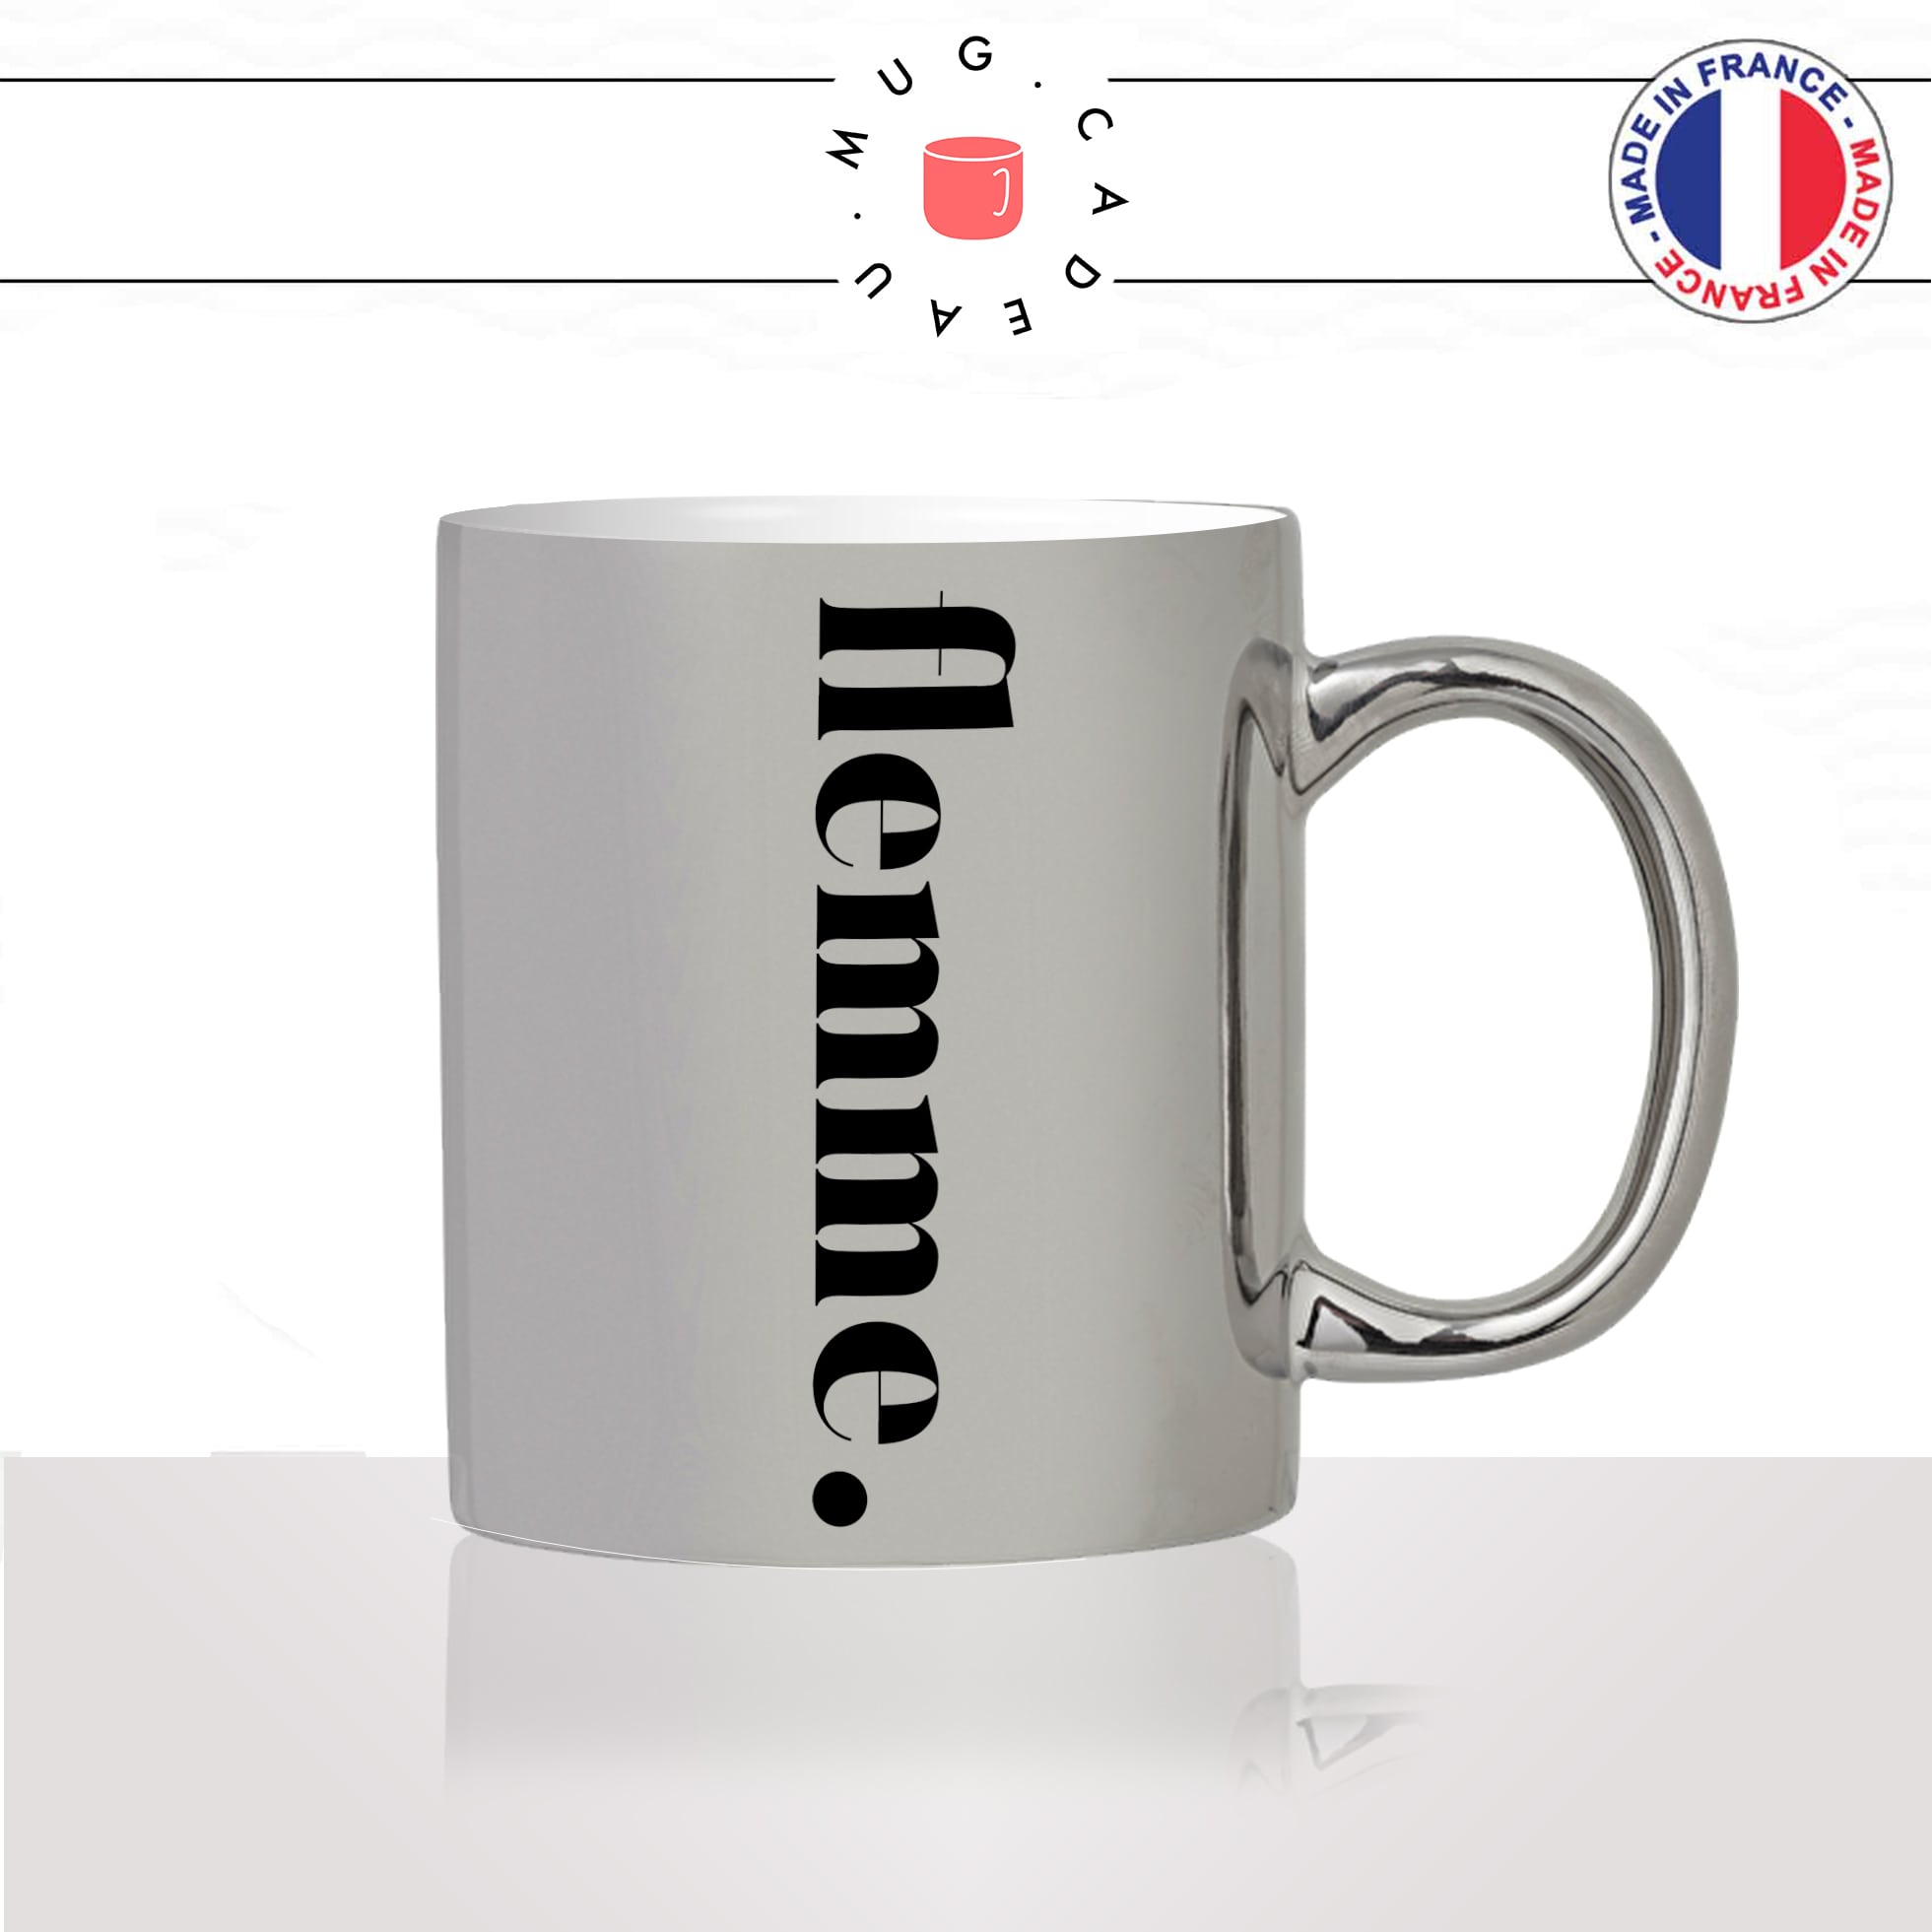 mug-tasse-silver-argenté-flemme-calligraphie-lettrine-mot-sieste-week-end-couple-décoration-amie-idée-cadeau-original-personnalisé-café-thé2-min